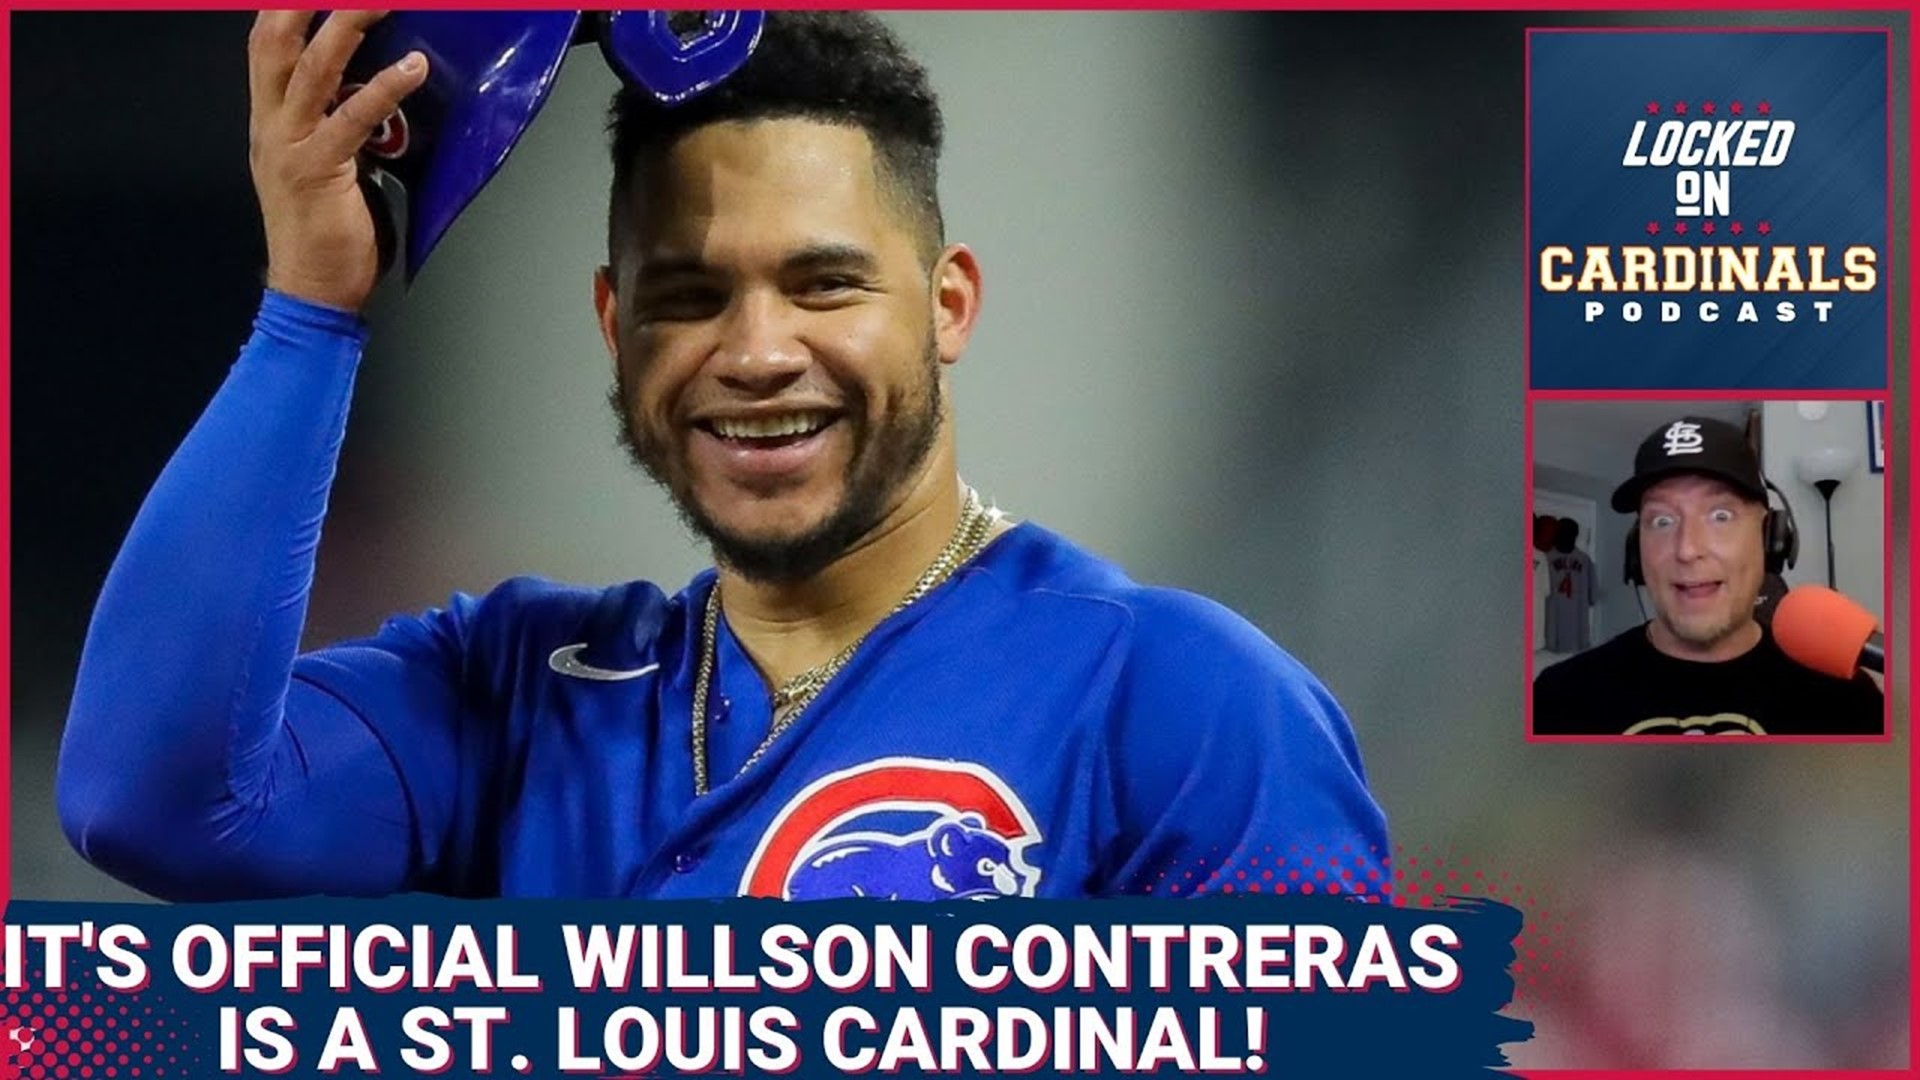 Willson Contreras - St. Louis Cardinals Catcher - ESPN